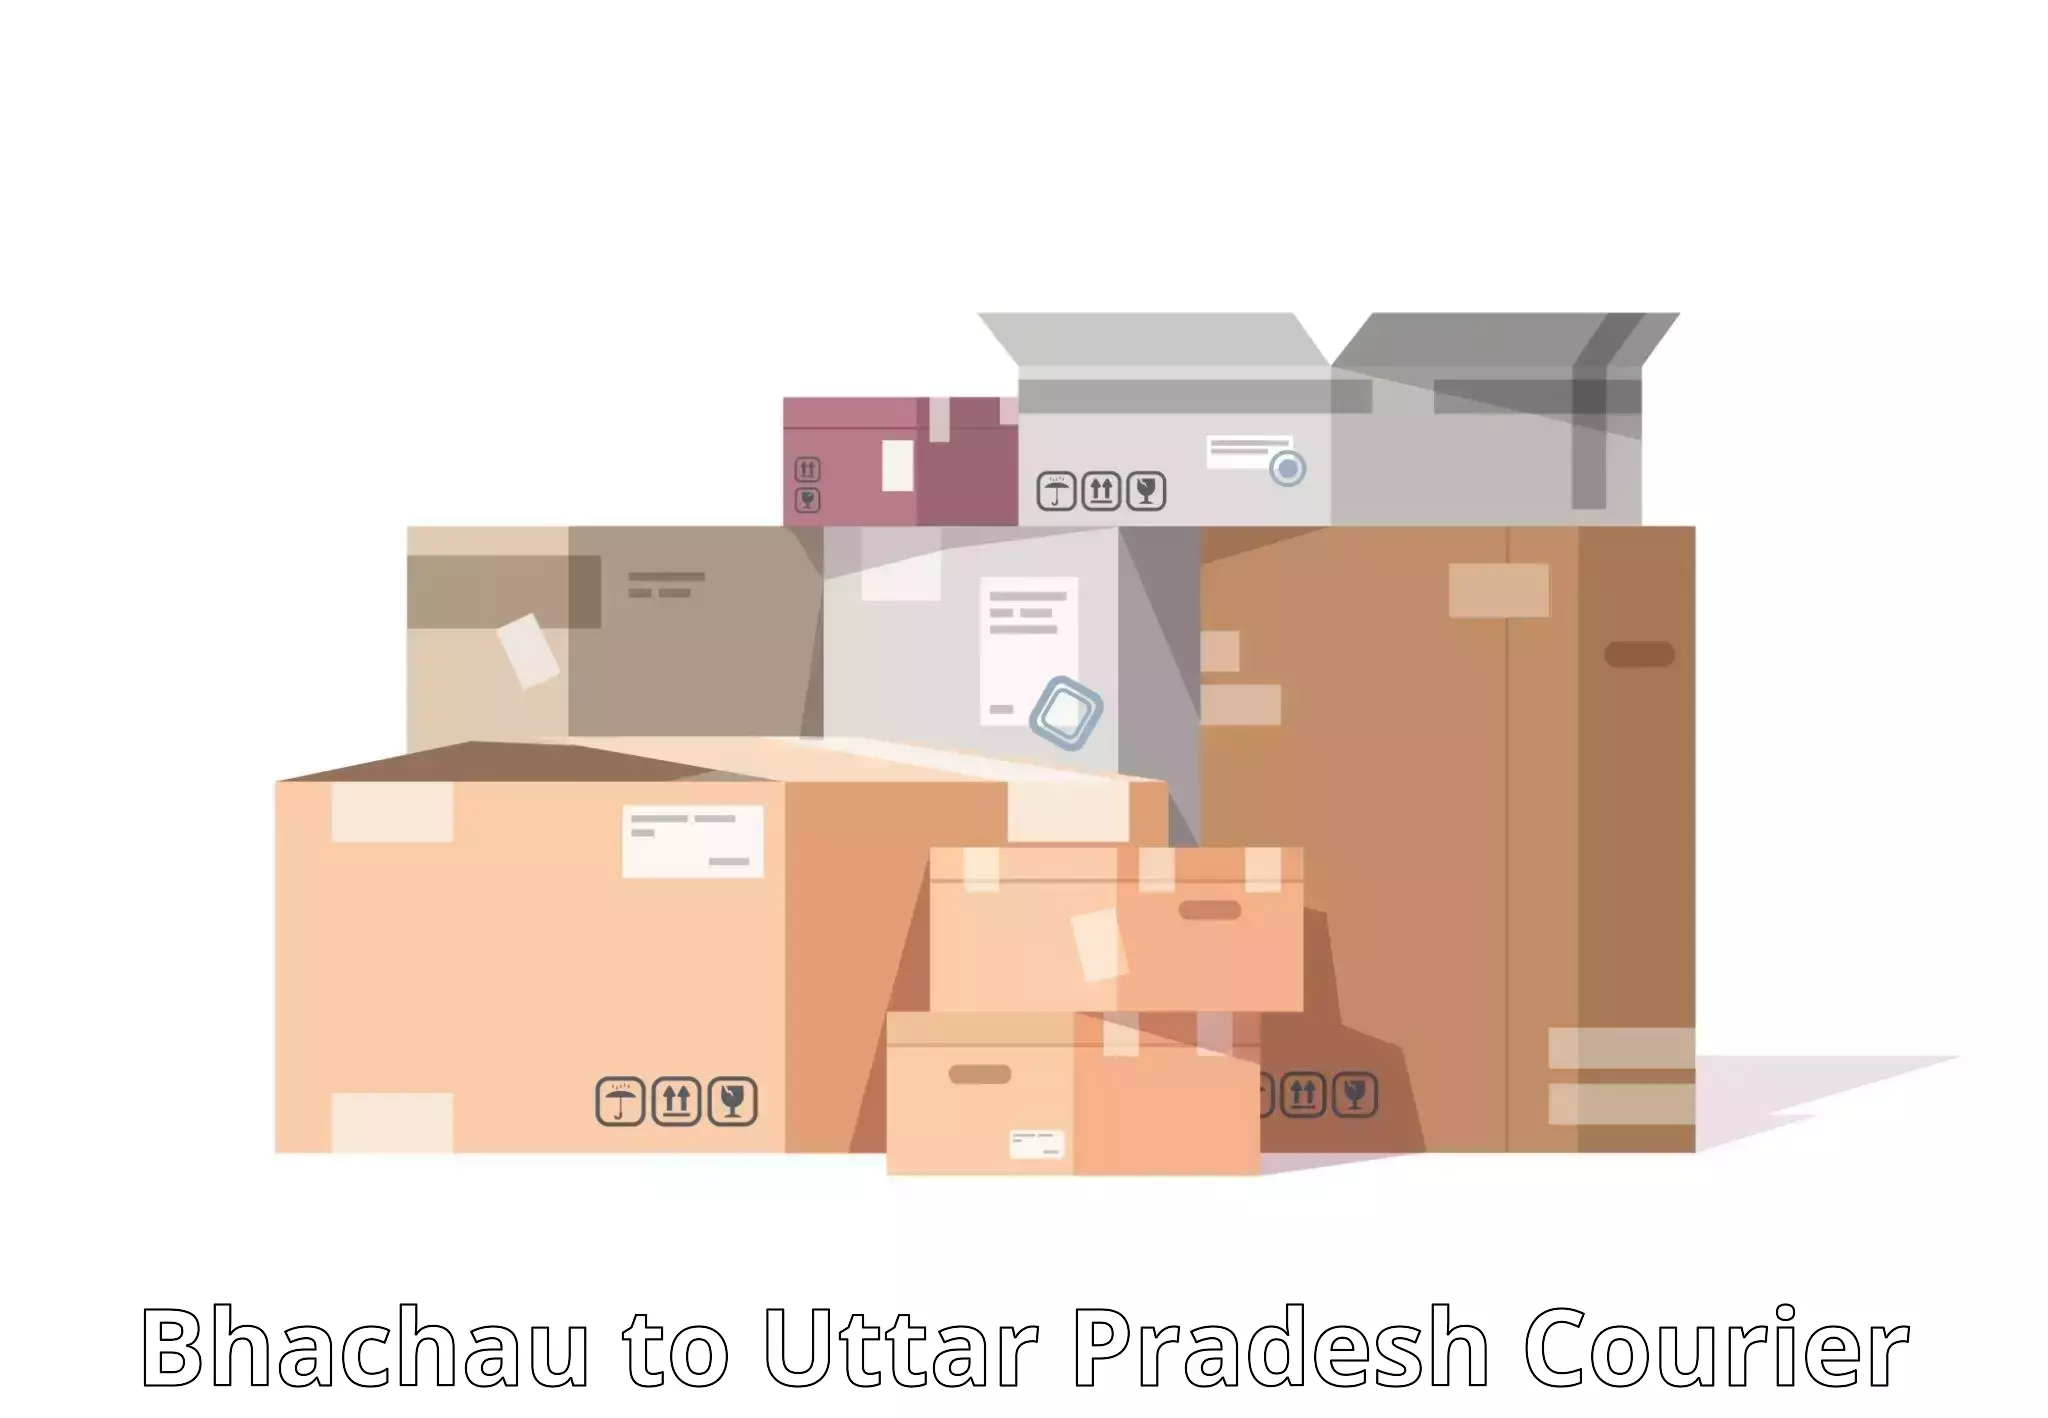 Nationwide courier service Bhachau to Chandpur